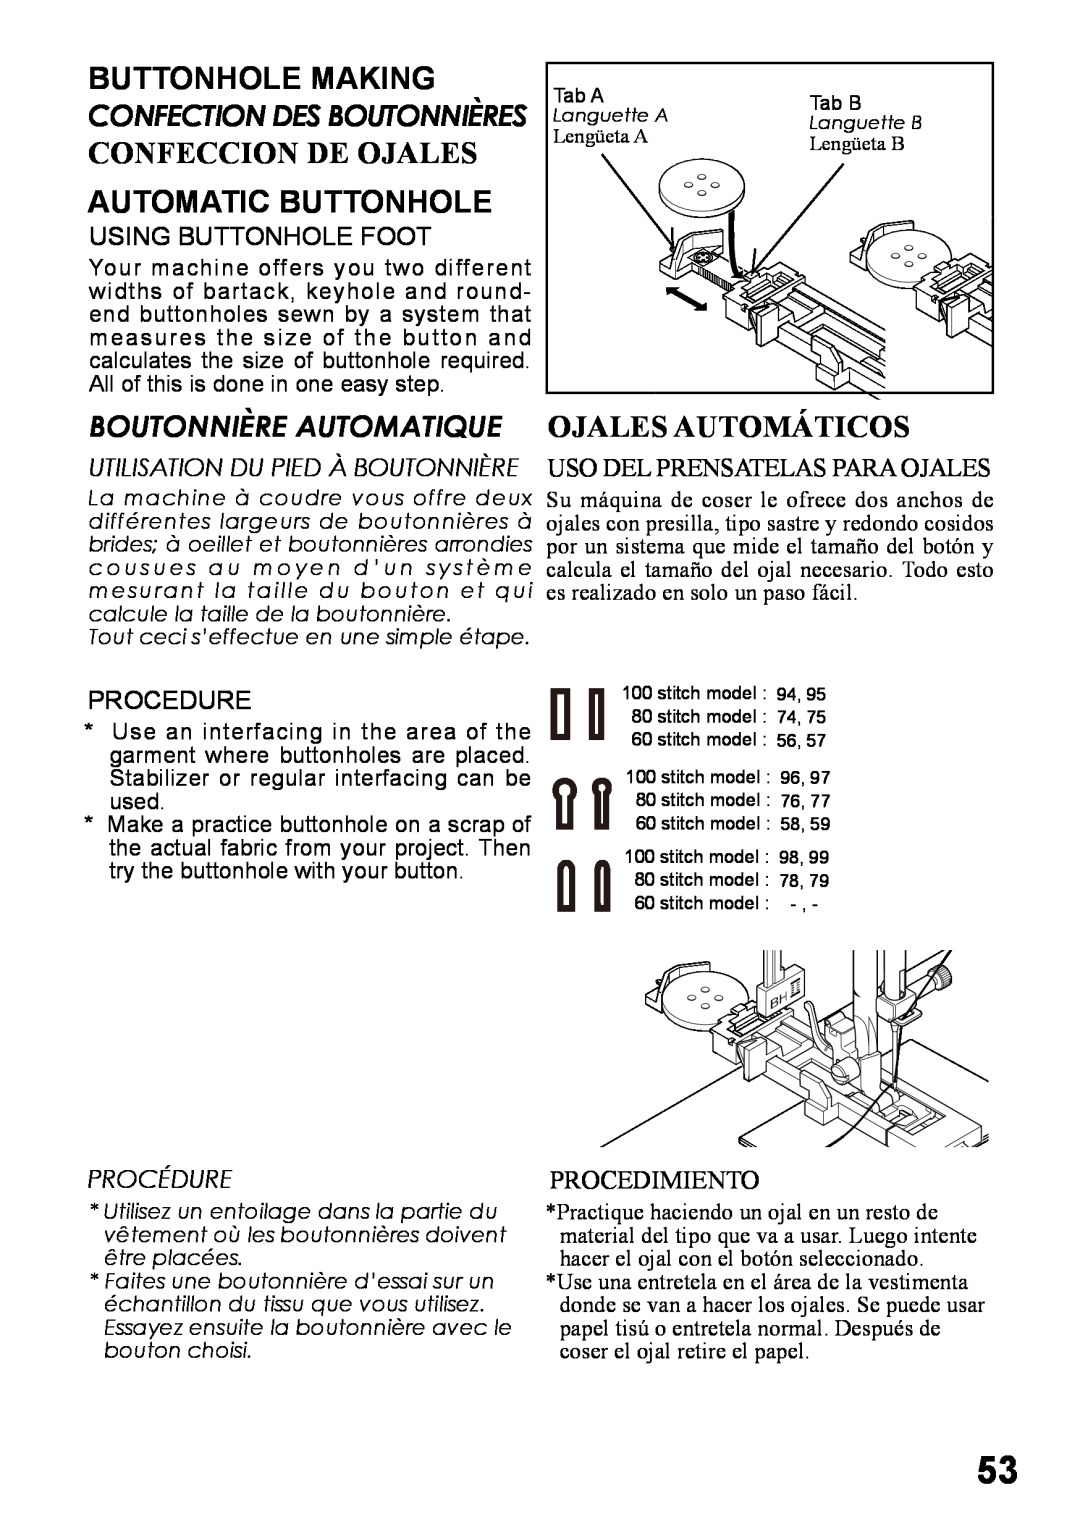 Singer 6180 Buttonhole Making, Confeccion De Ojales, Automatic Buttonhole, Ojales Automáticos, Boutonnière Automatique 